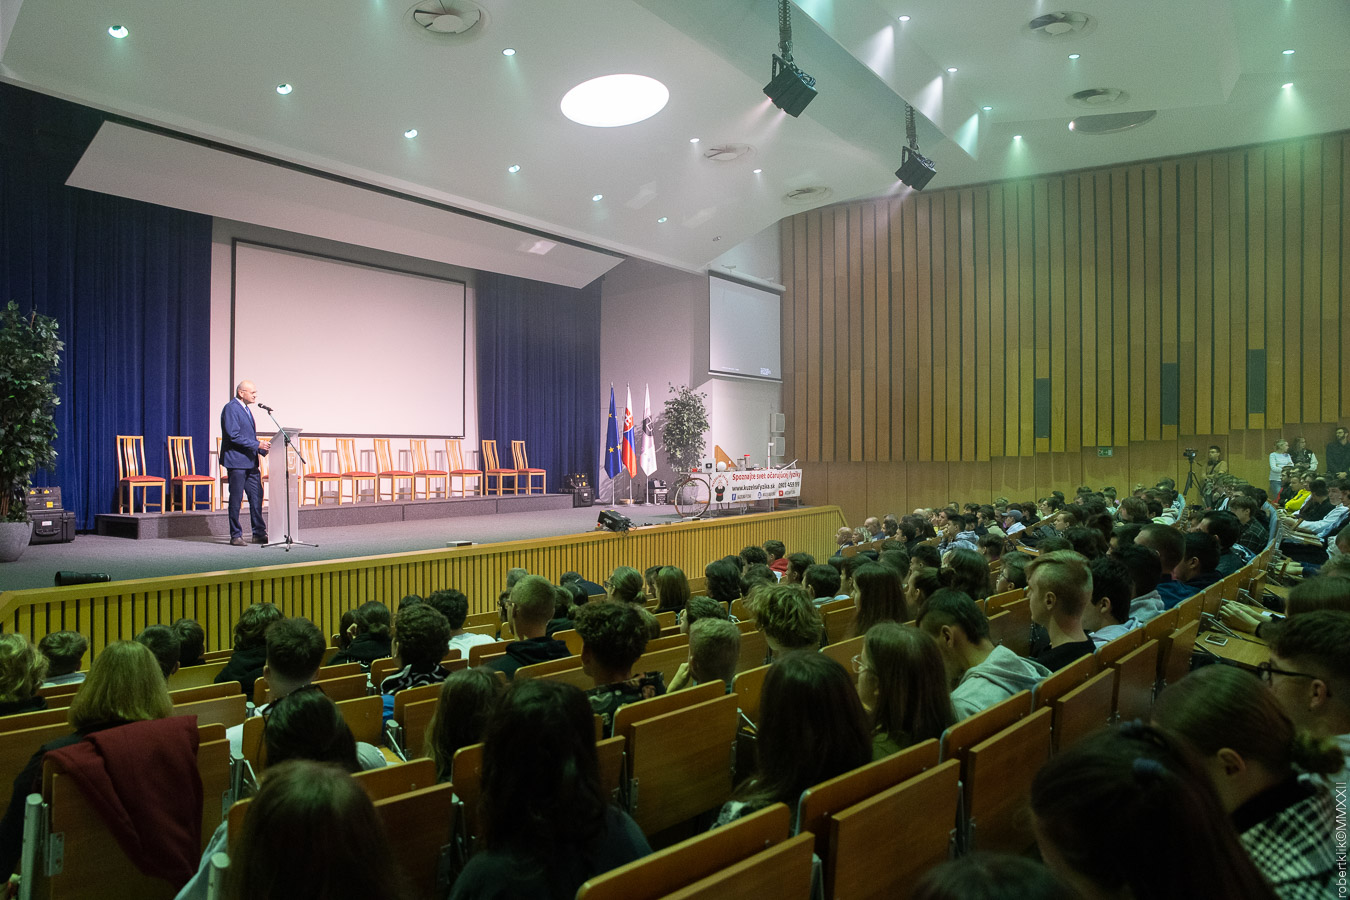 Deň otvorených dverí na Technickej univerzite v Košiciach aj v tomto roku 12. októbra prilákal viac ako tisíc stredoškolákov.